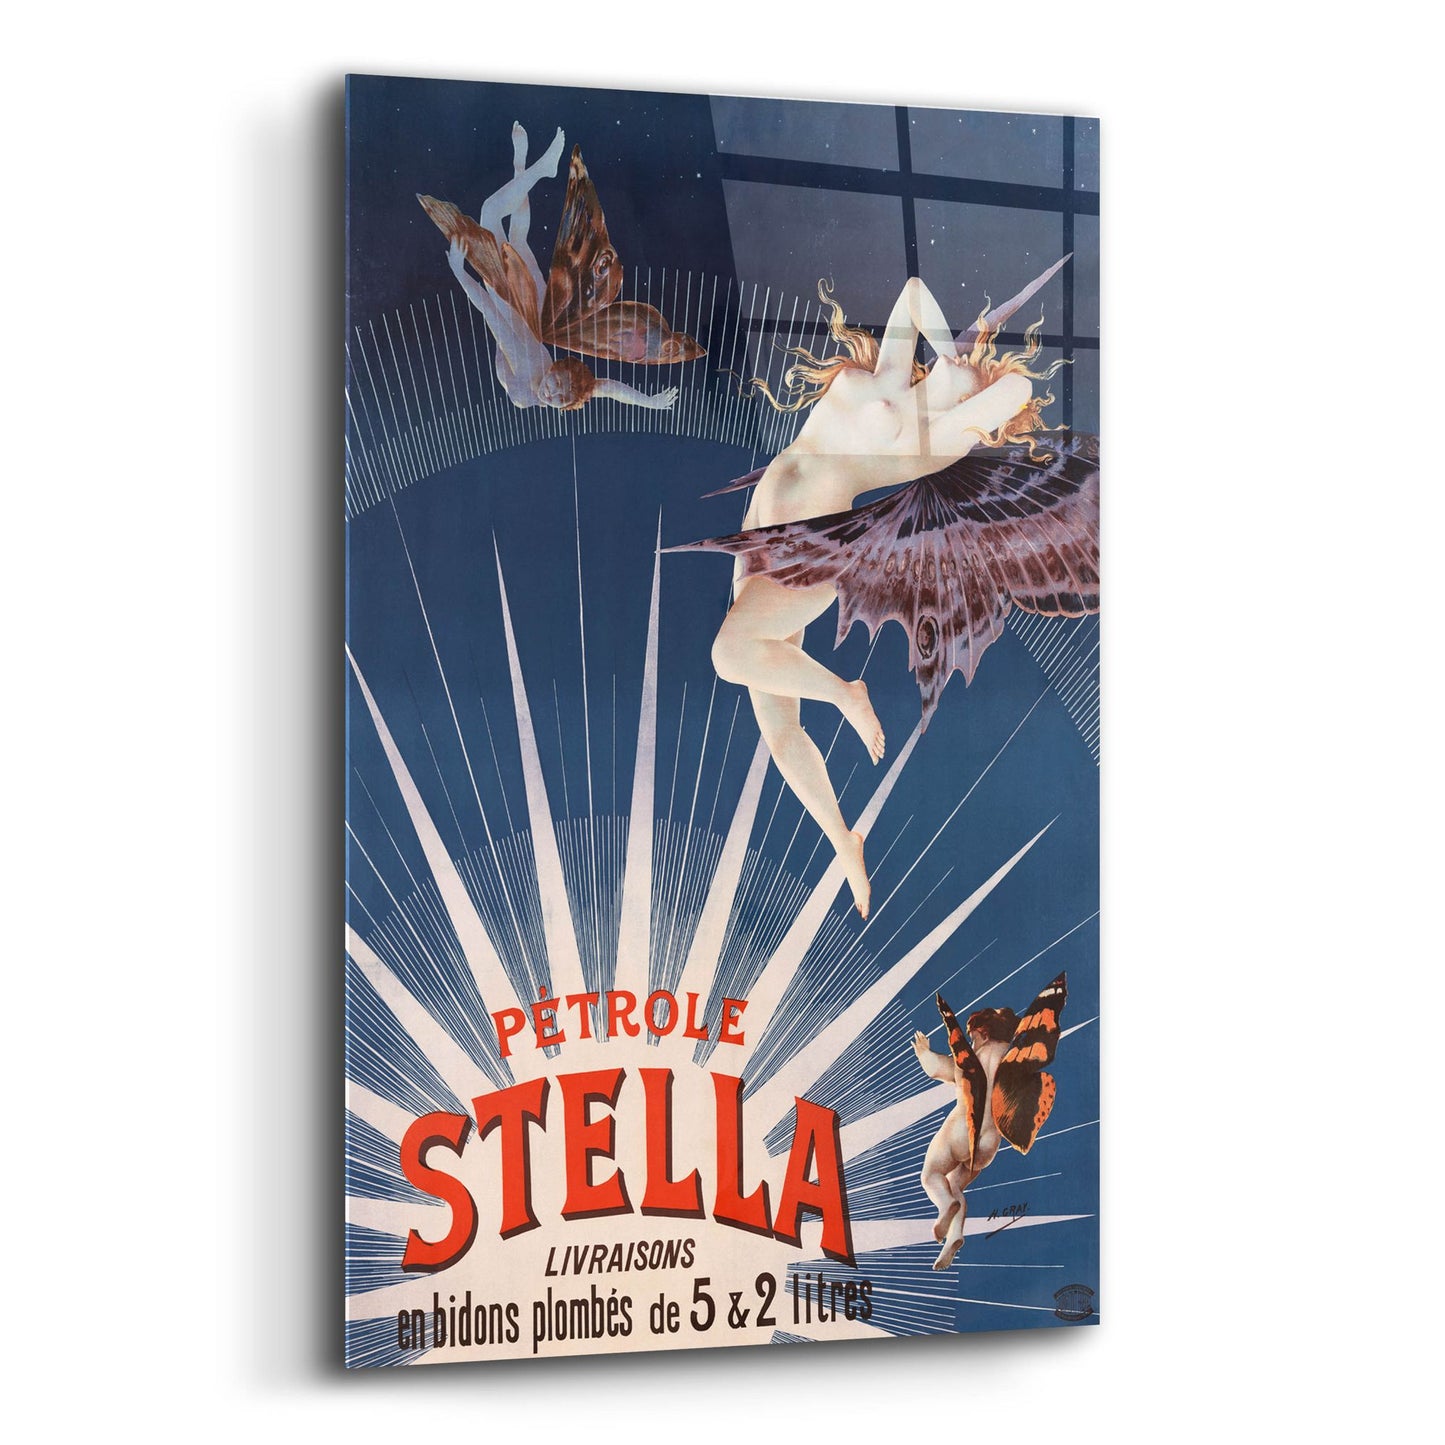 Epic Art 'Petrole Stella' by Gray, Acrylic Glass Wall Art,12x16